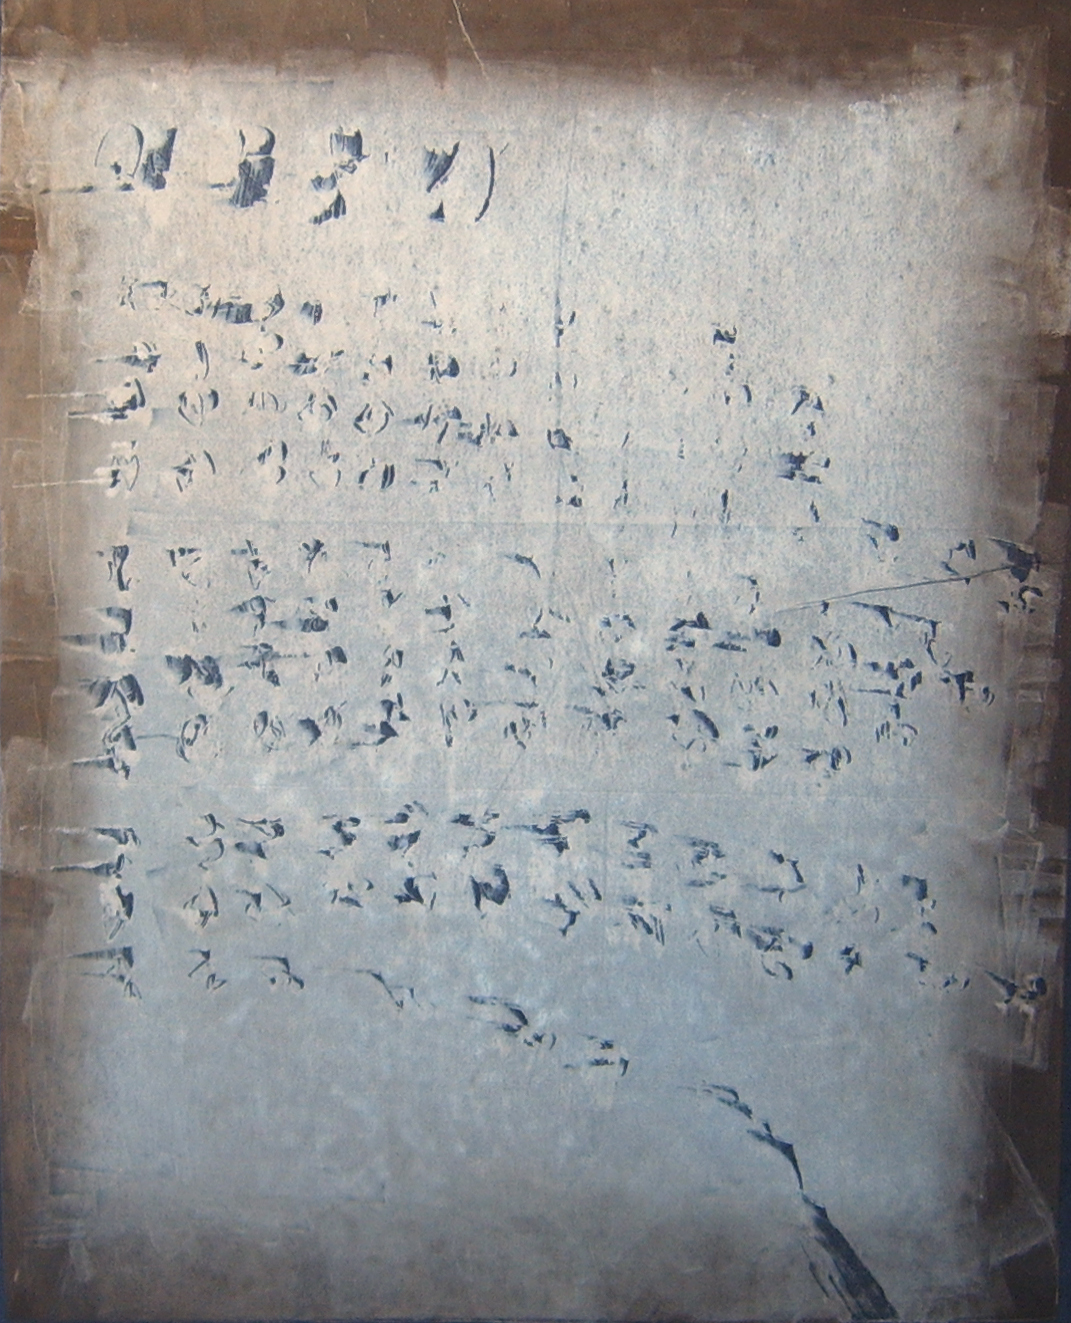 Dopis II, 2006, 57x45, monotyp, paspartováno a rámováno